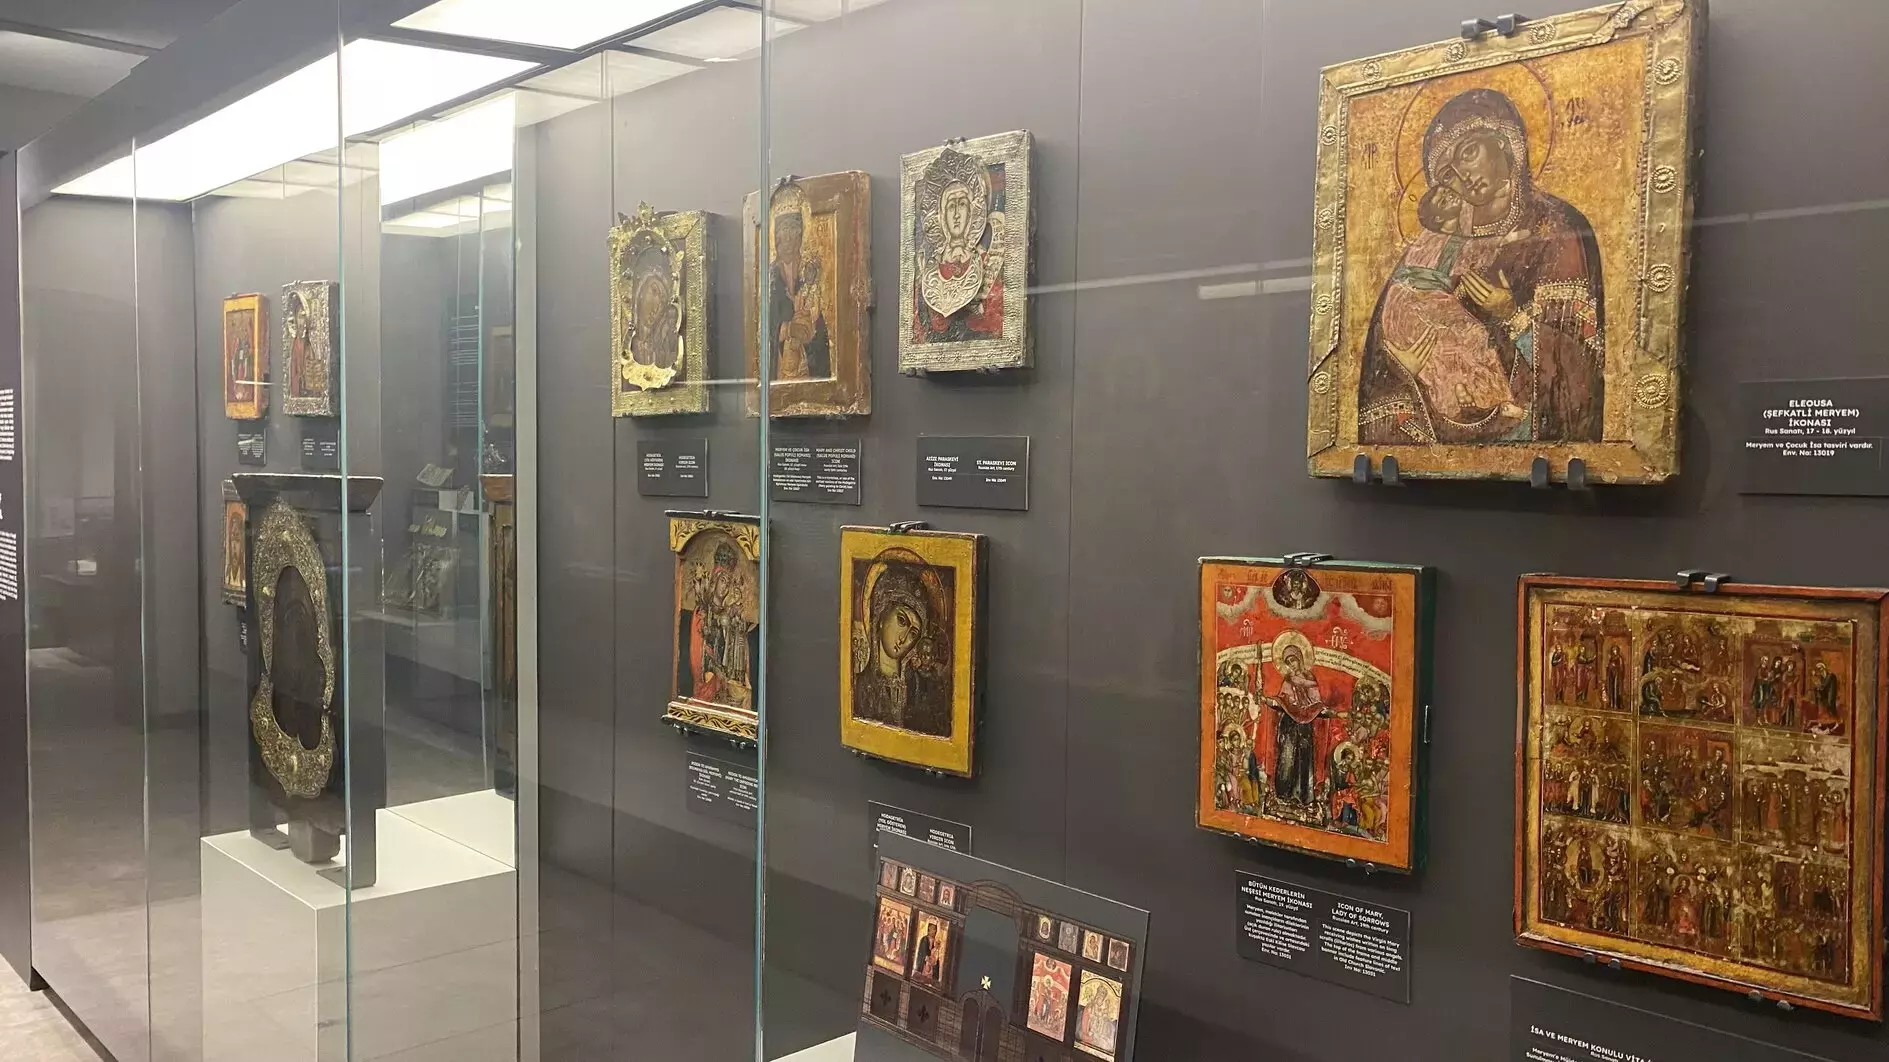 Le musée d’histoire de la cathédrale Sainte-Sophie de Constantinople présente une nouvelle collection